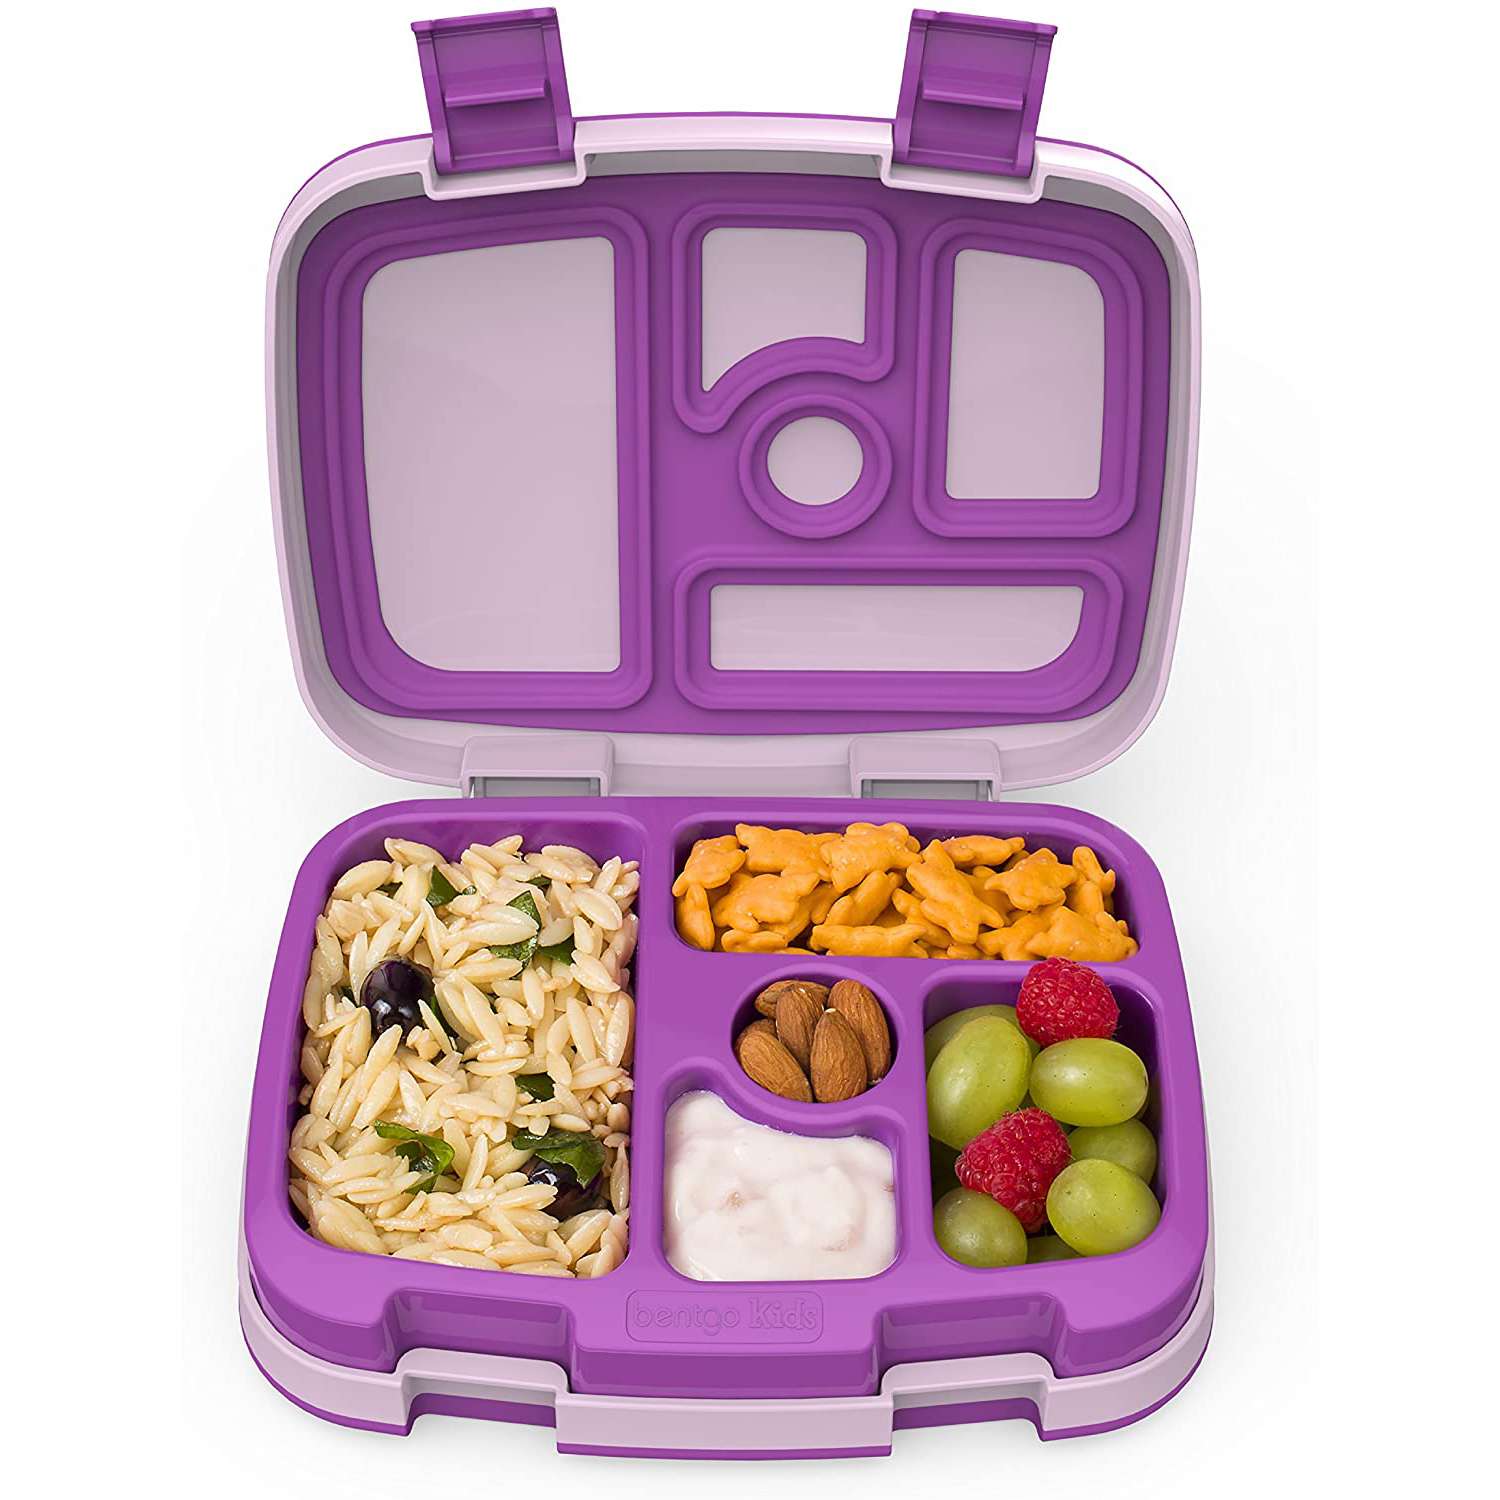 Bentgo Kid Children's Lunch Box in purple